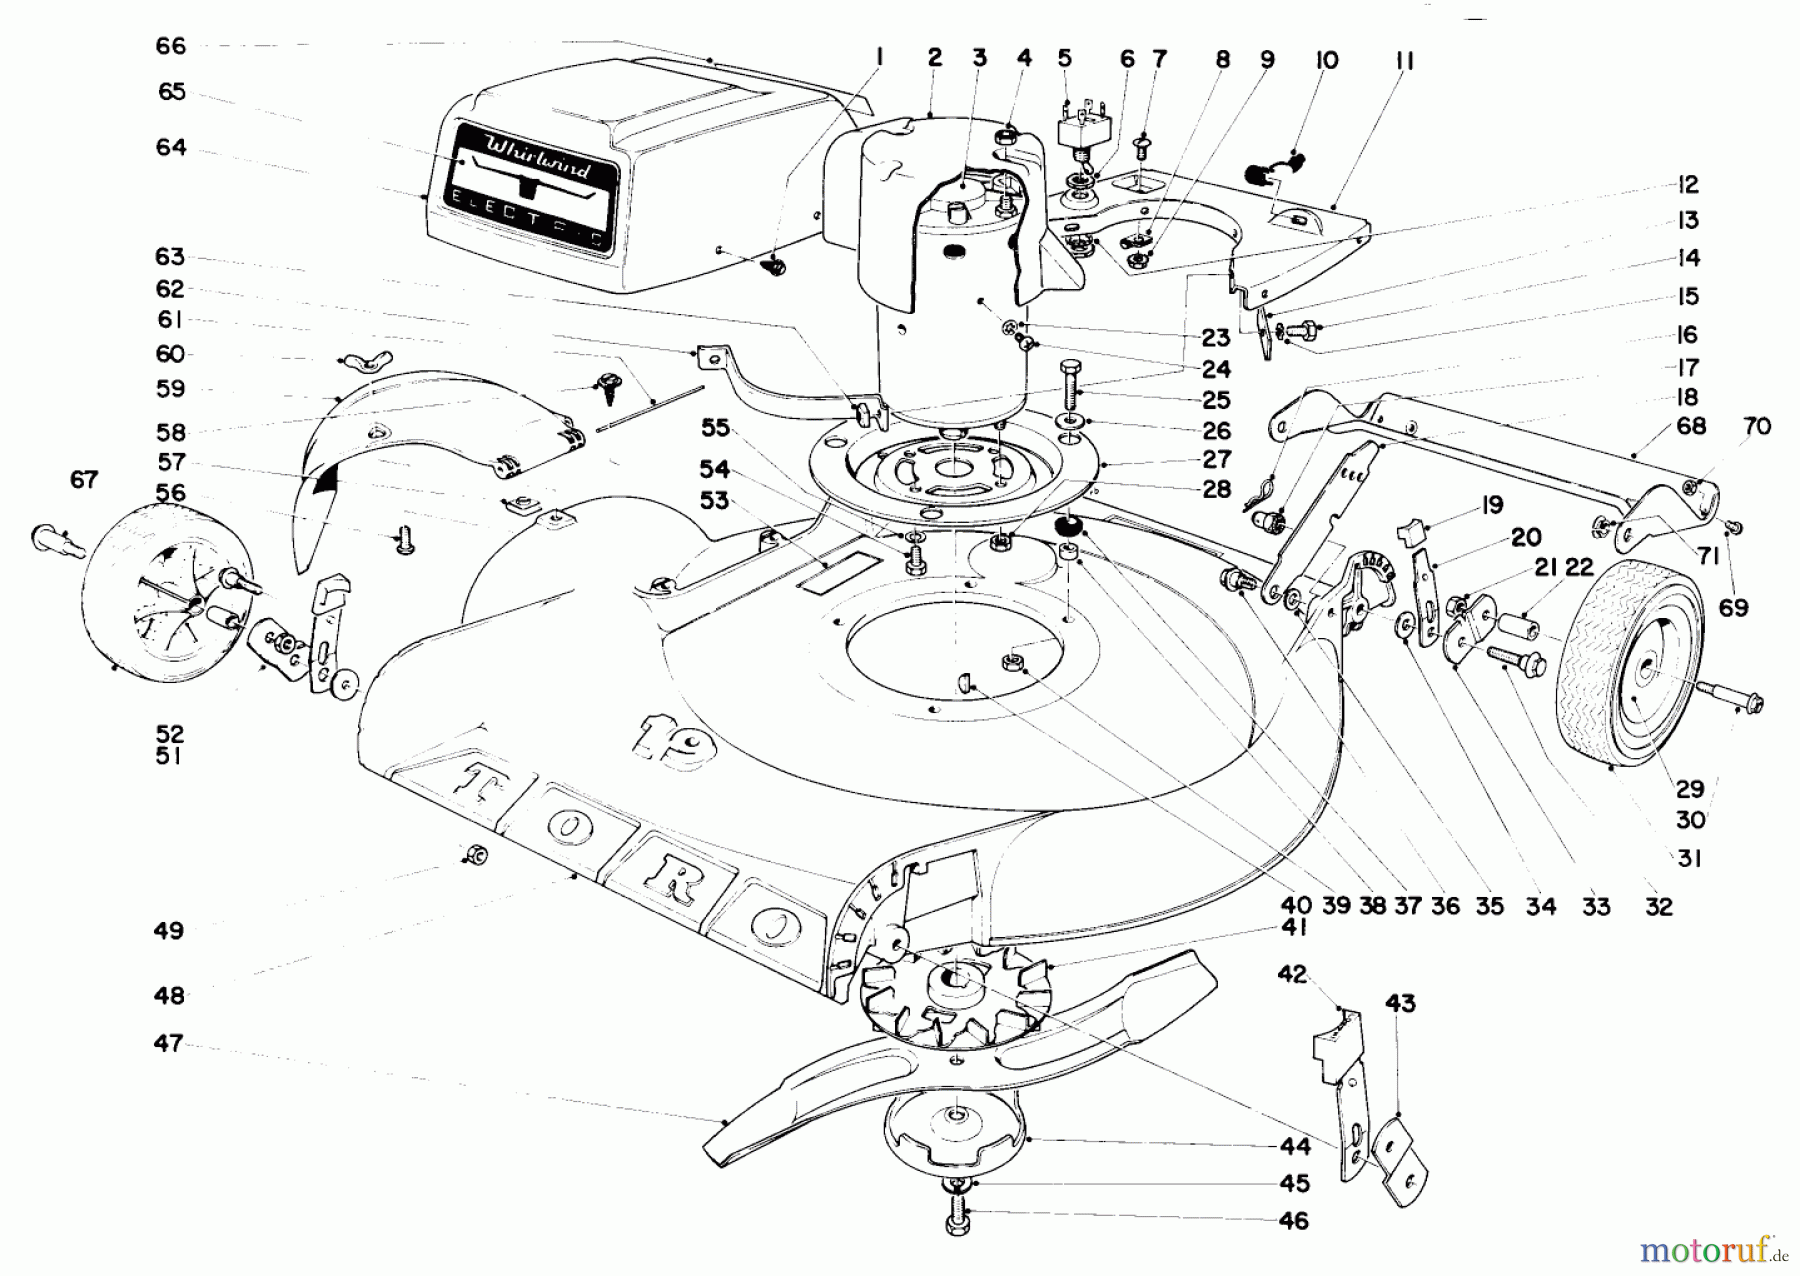  Toro Neu Mowers, Electric 18301 - Toro Electric Whirlwind Lawnmower, 1969 (9000001-9999999) 19